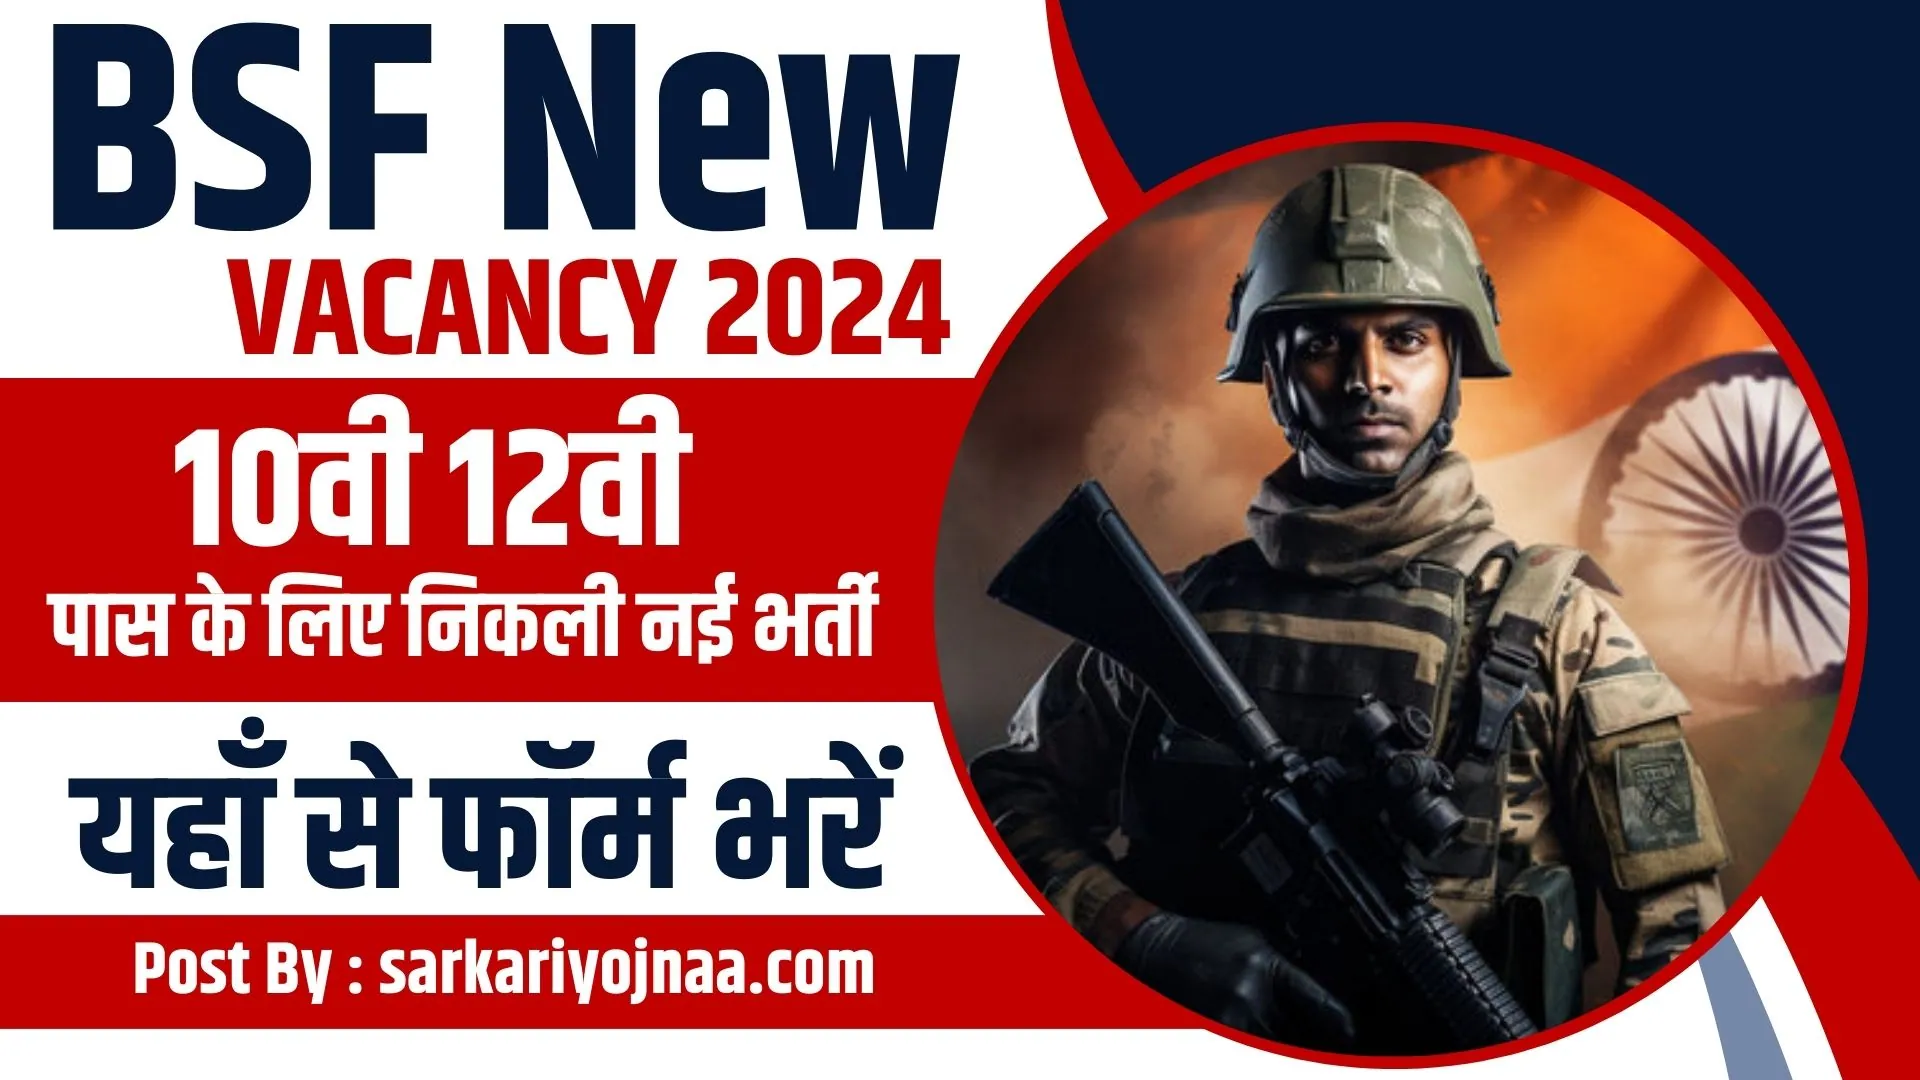 BSF New Vacancy 2024